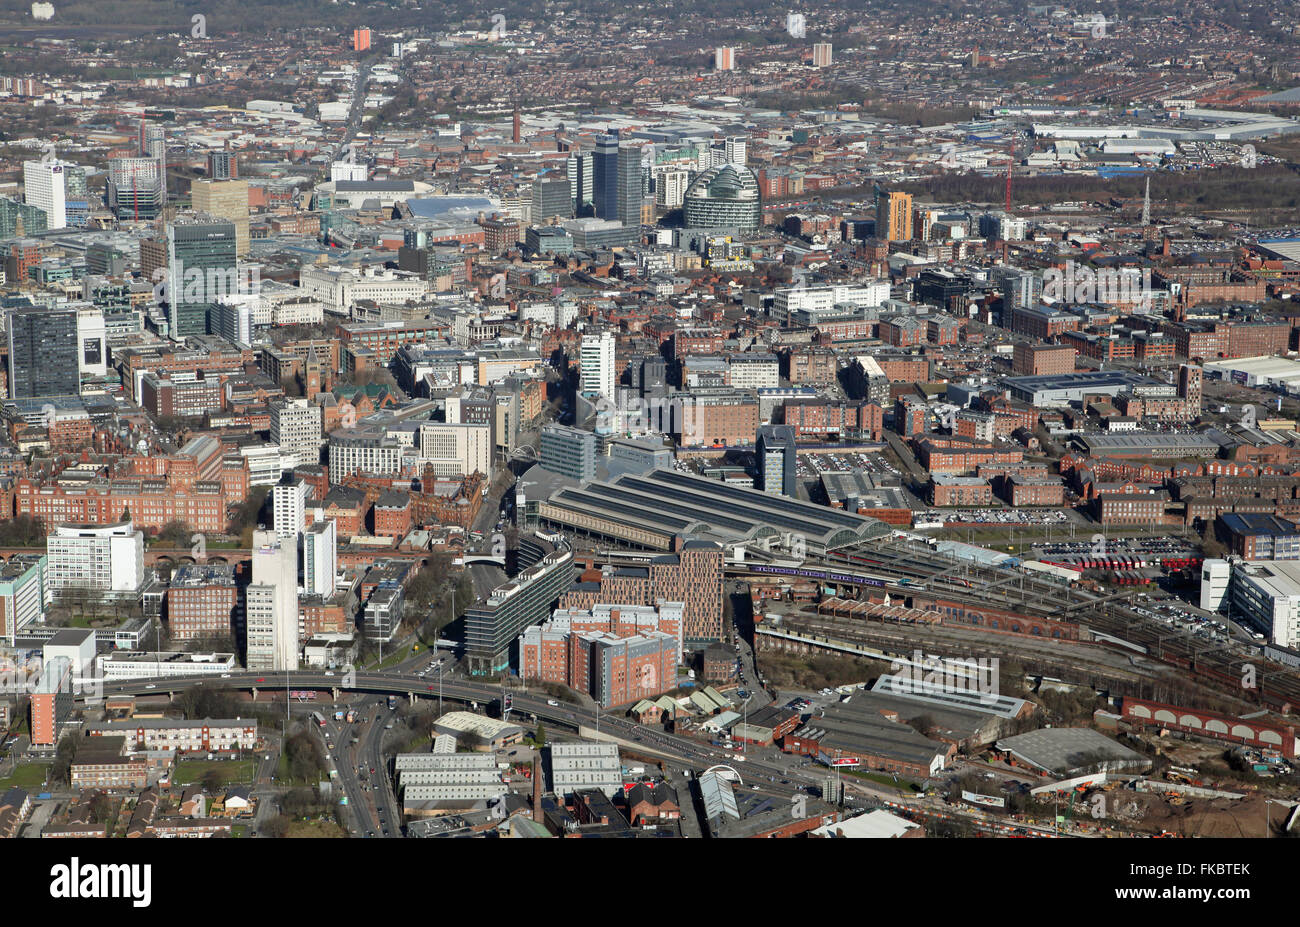 Vue aérienne du centre-ville de Manchester à l'horizon au nord à travers la gare Piccadilly, Royaume-Uni Banque D'Images